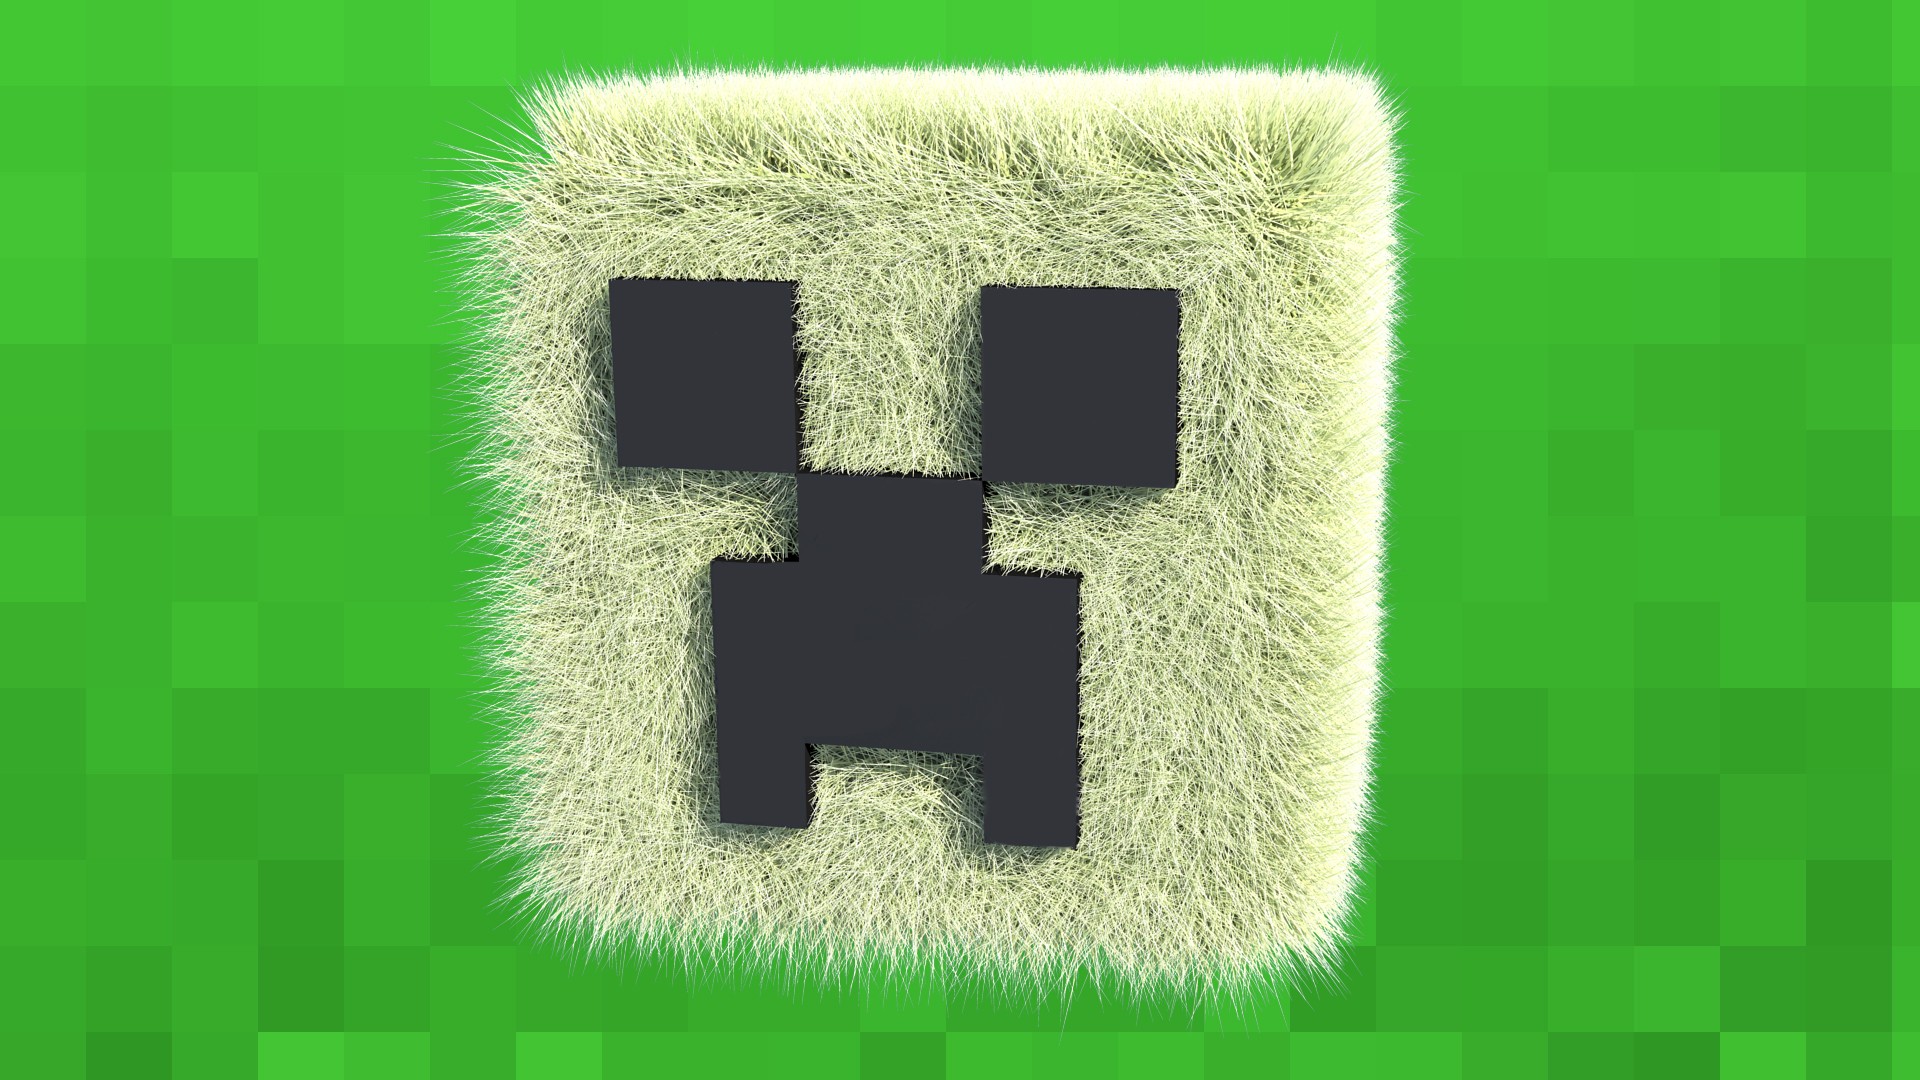 Với Cool Minecraft Creeper Wallpapers, bạn sẽ có cơ hội để hiện thực hóa nhân vật yêu thích của mình và trang trí màn hình của mình một cách độc đáo. Với hàng loạt những tùy chọn về các hình ảnh đẹp và sinh động, bạn chắc hẳn sẽ tìm được mẫu wallpaper của riêng mình. Hãy để Minecraft Creeper Wallpapers mang đến cho bạn sự khác biệt và độc đáo nhất! 